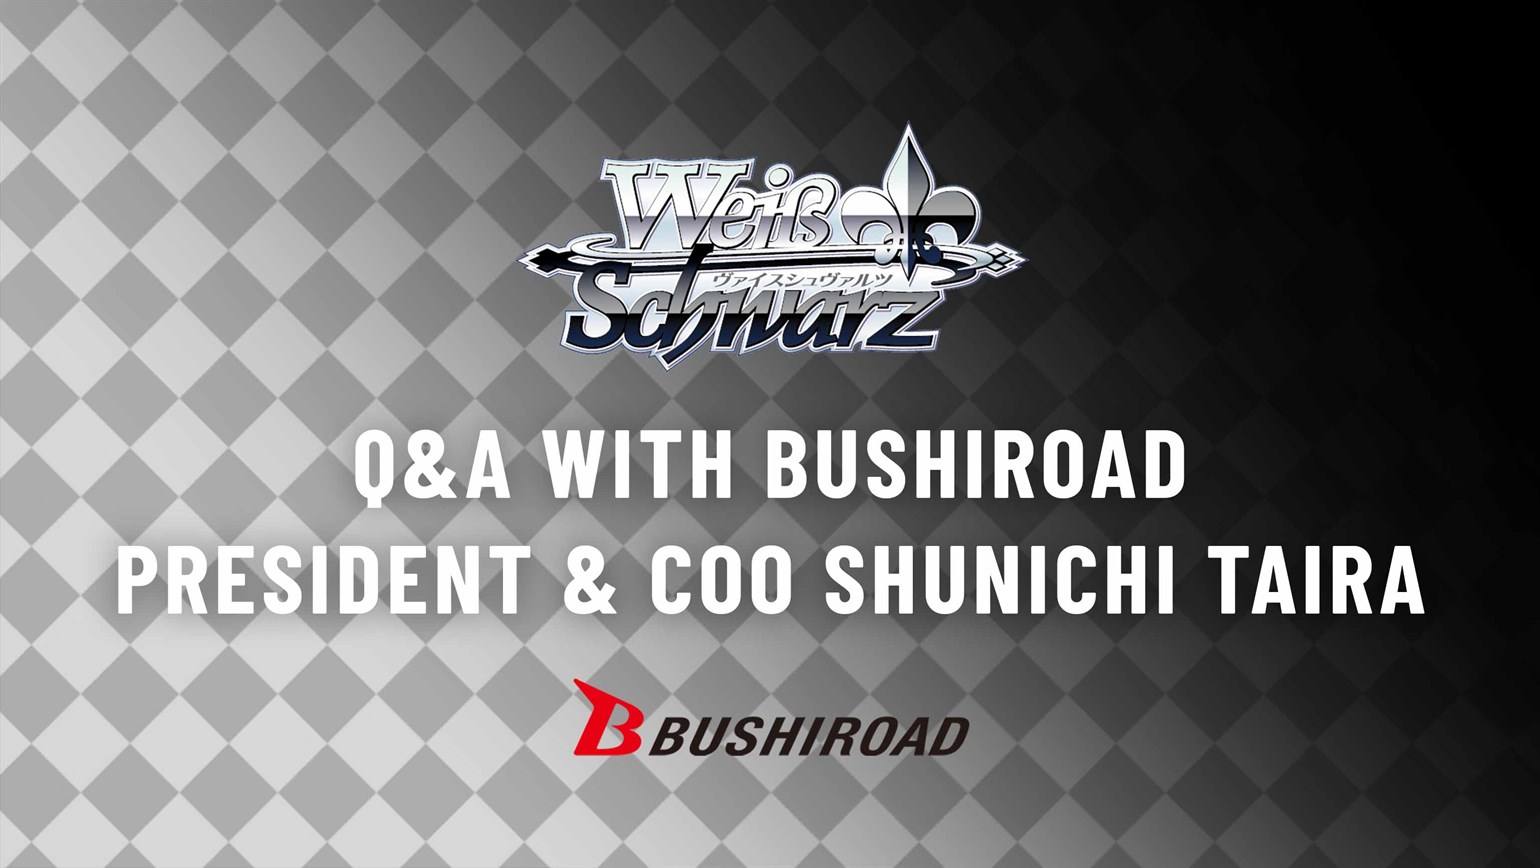 Weiss Schwarz: Q&A With Bushiroad President & COO Shunichi Taira